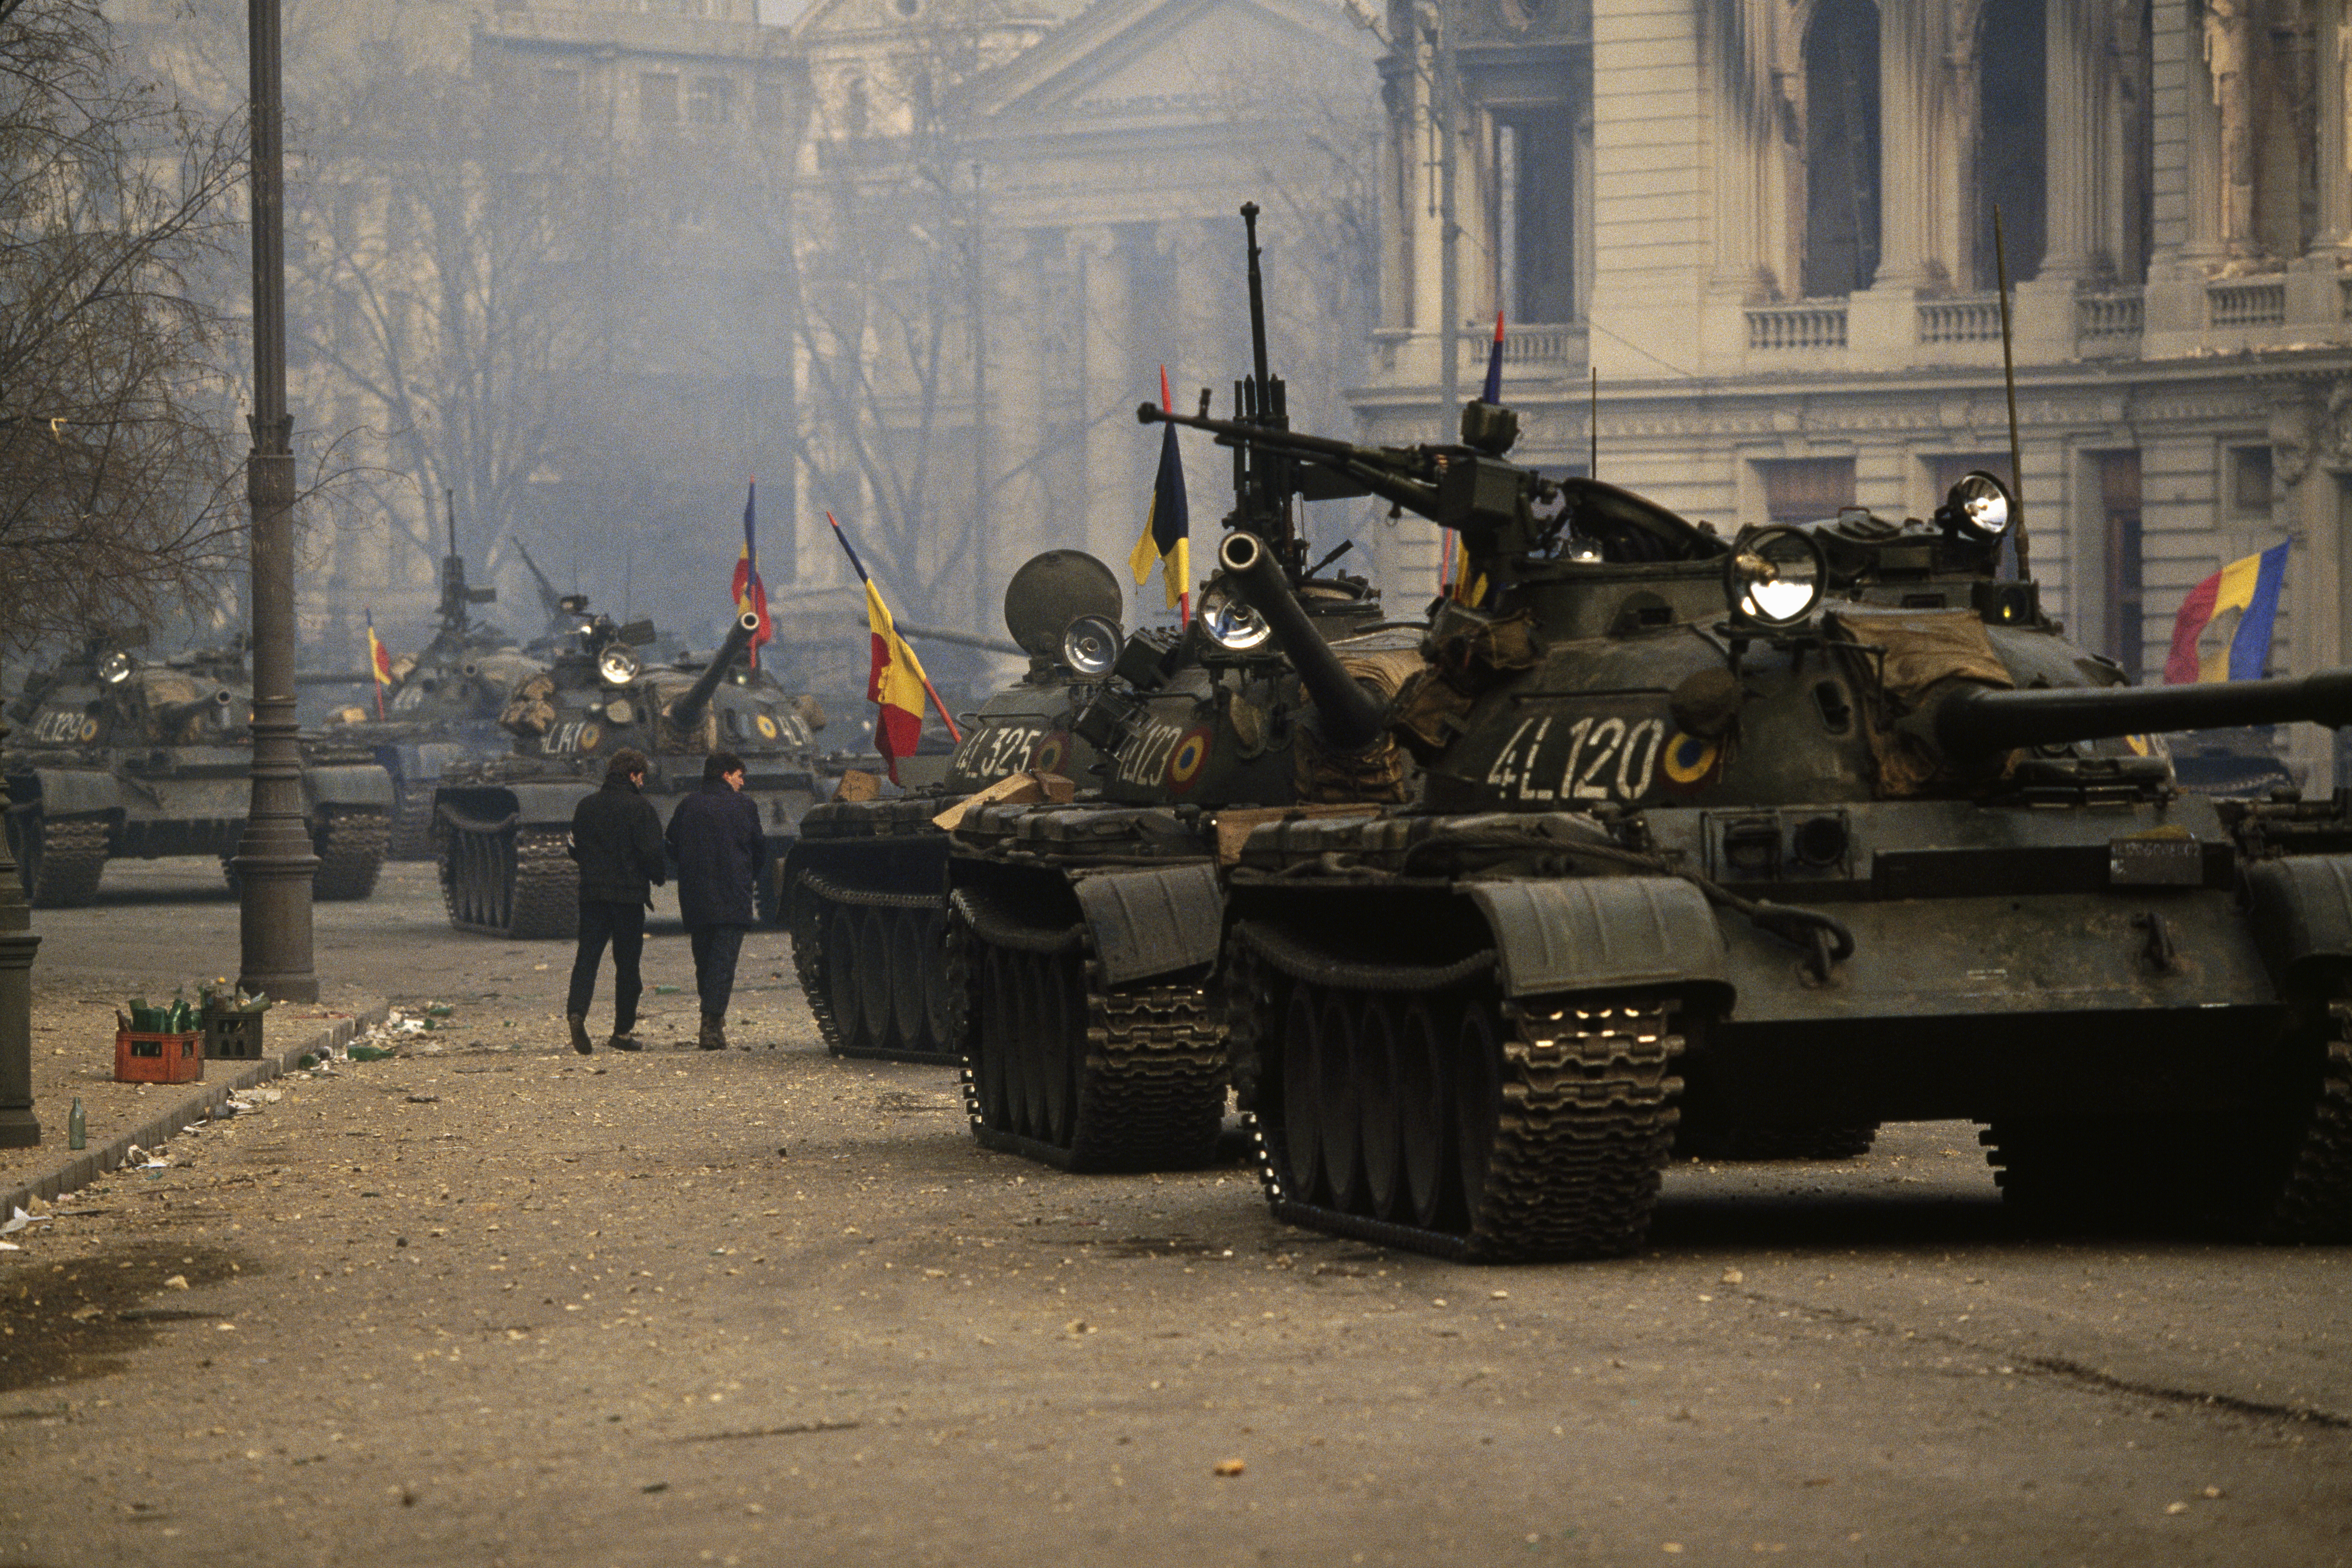 Tanques en las calles de Bucarest el 17 de diciembre de 1989. Ceacescu ordenó a sus tropas disparar contra su pueblo. Poco después, el Ejército lo abandonó y ese fue el fin del dictador (Photo by Patrick Durand/Sygma via Getty Images)